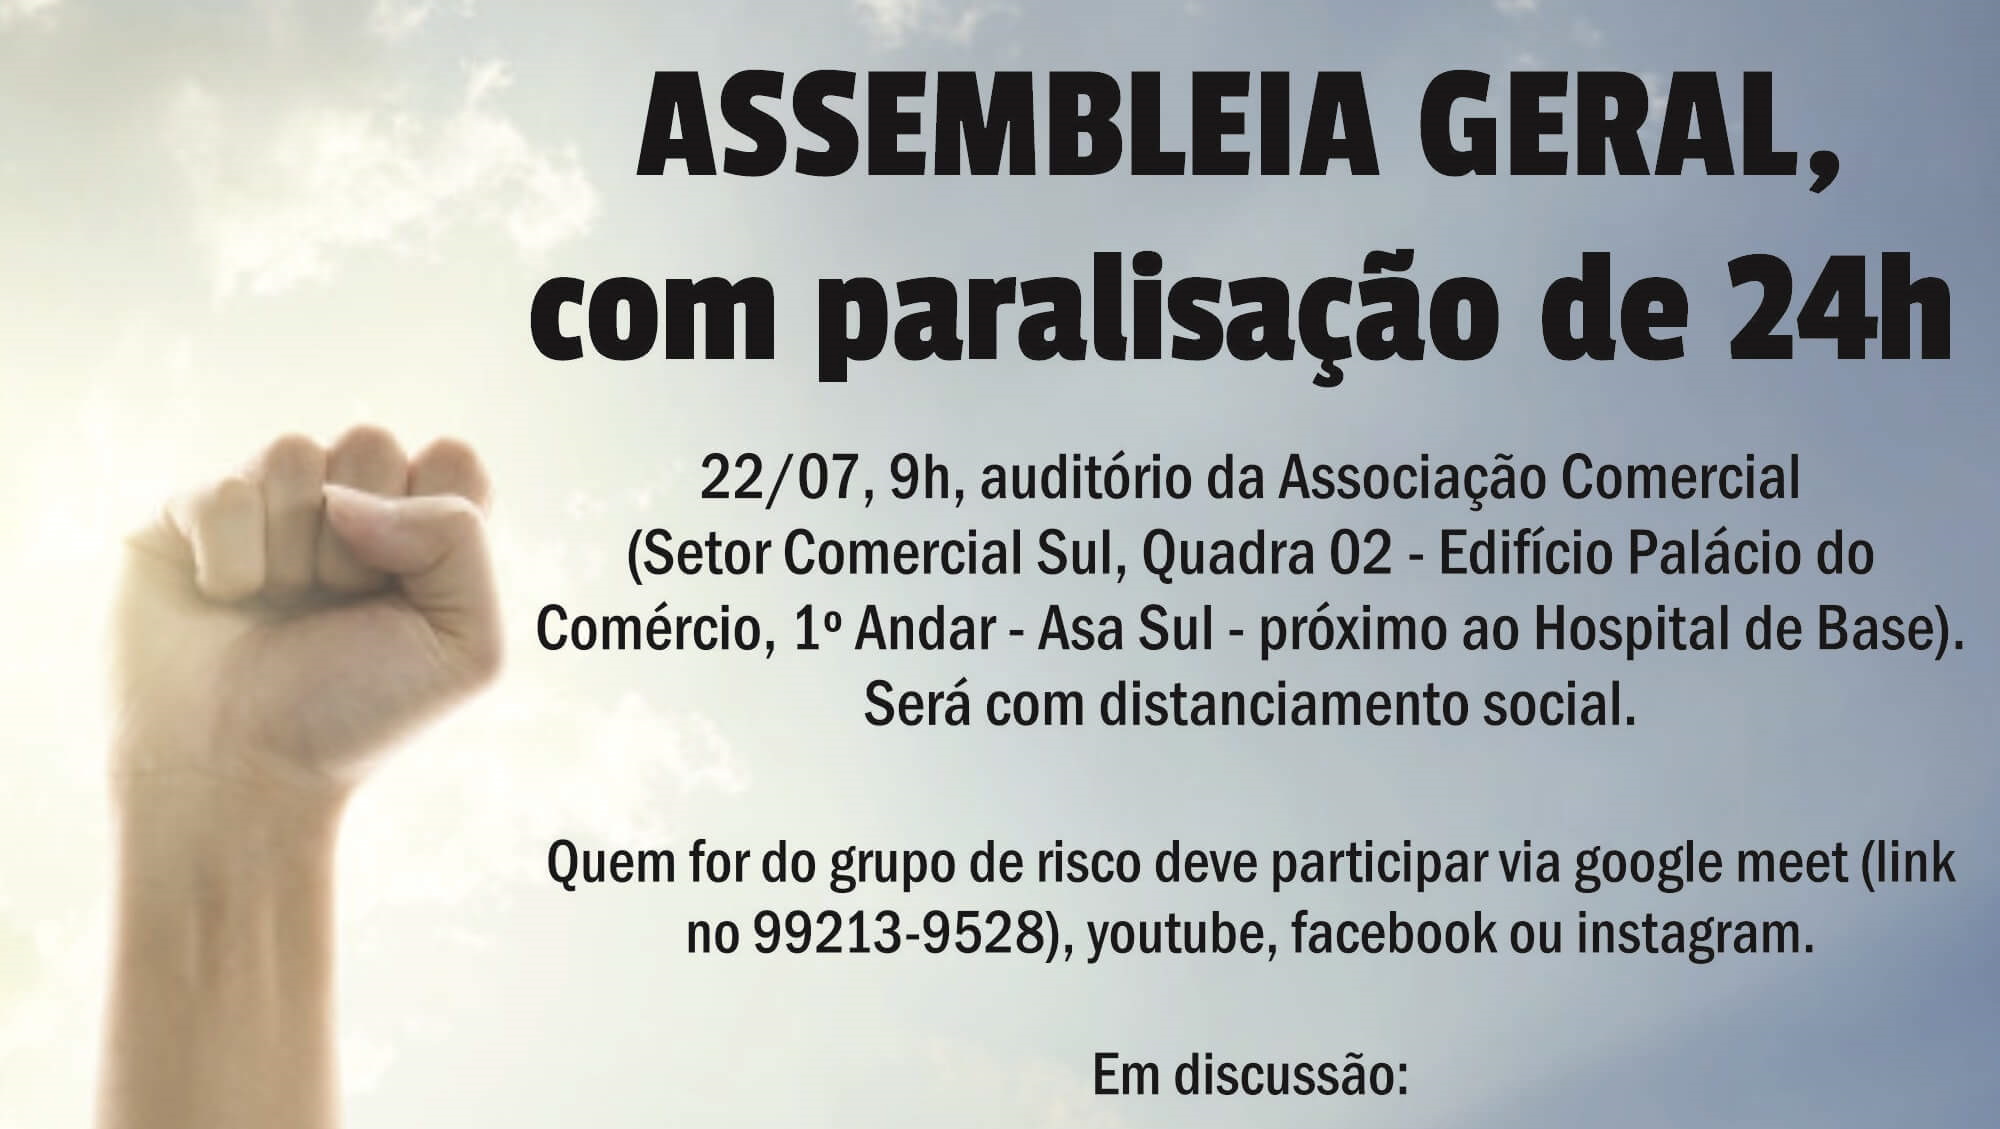 ASSEMBLEIA GERAL, COM PARALISAÇÃO DE 24h - 22/07